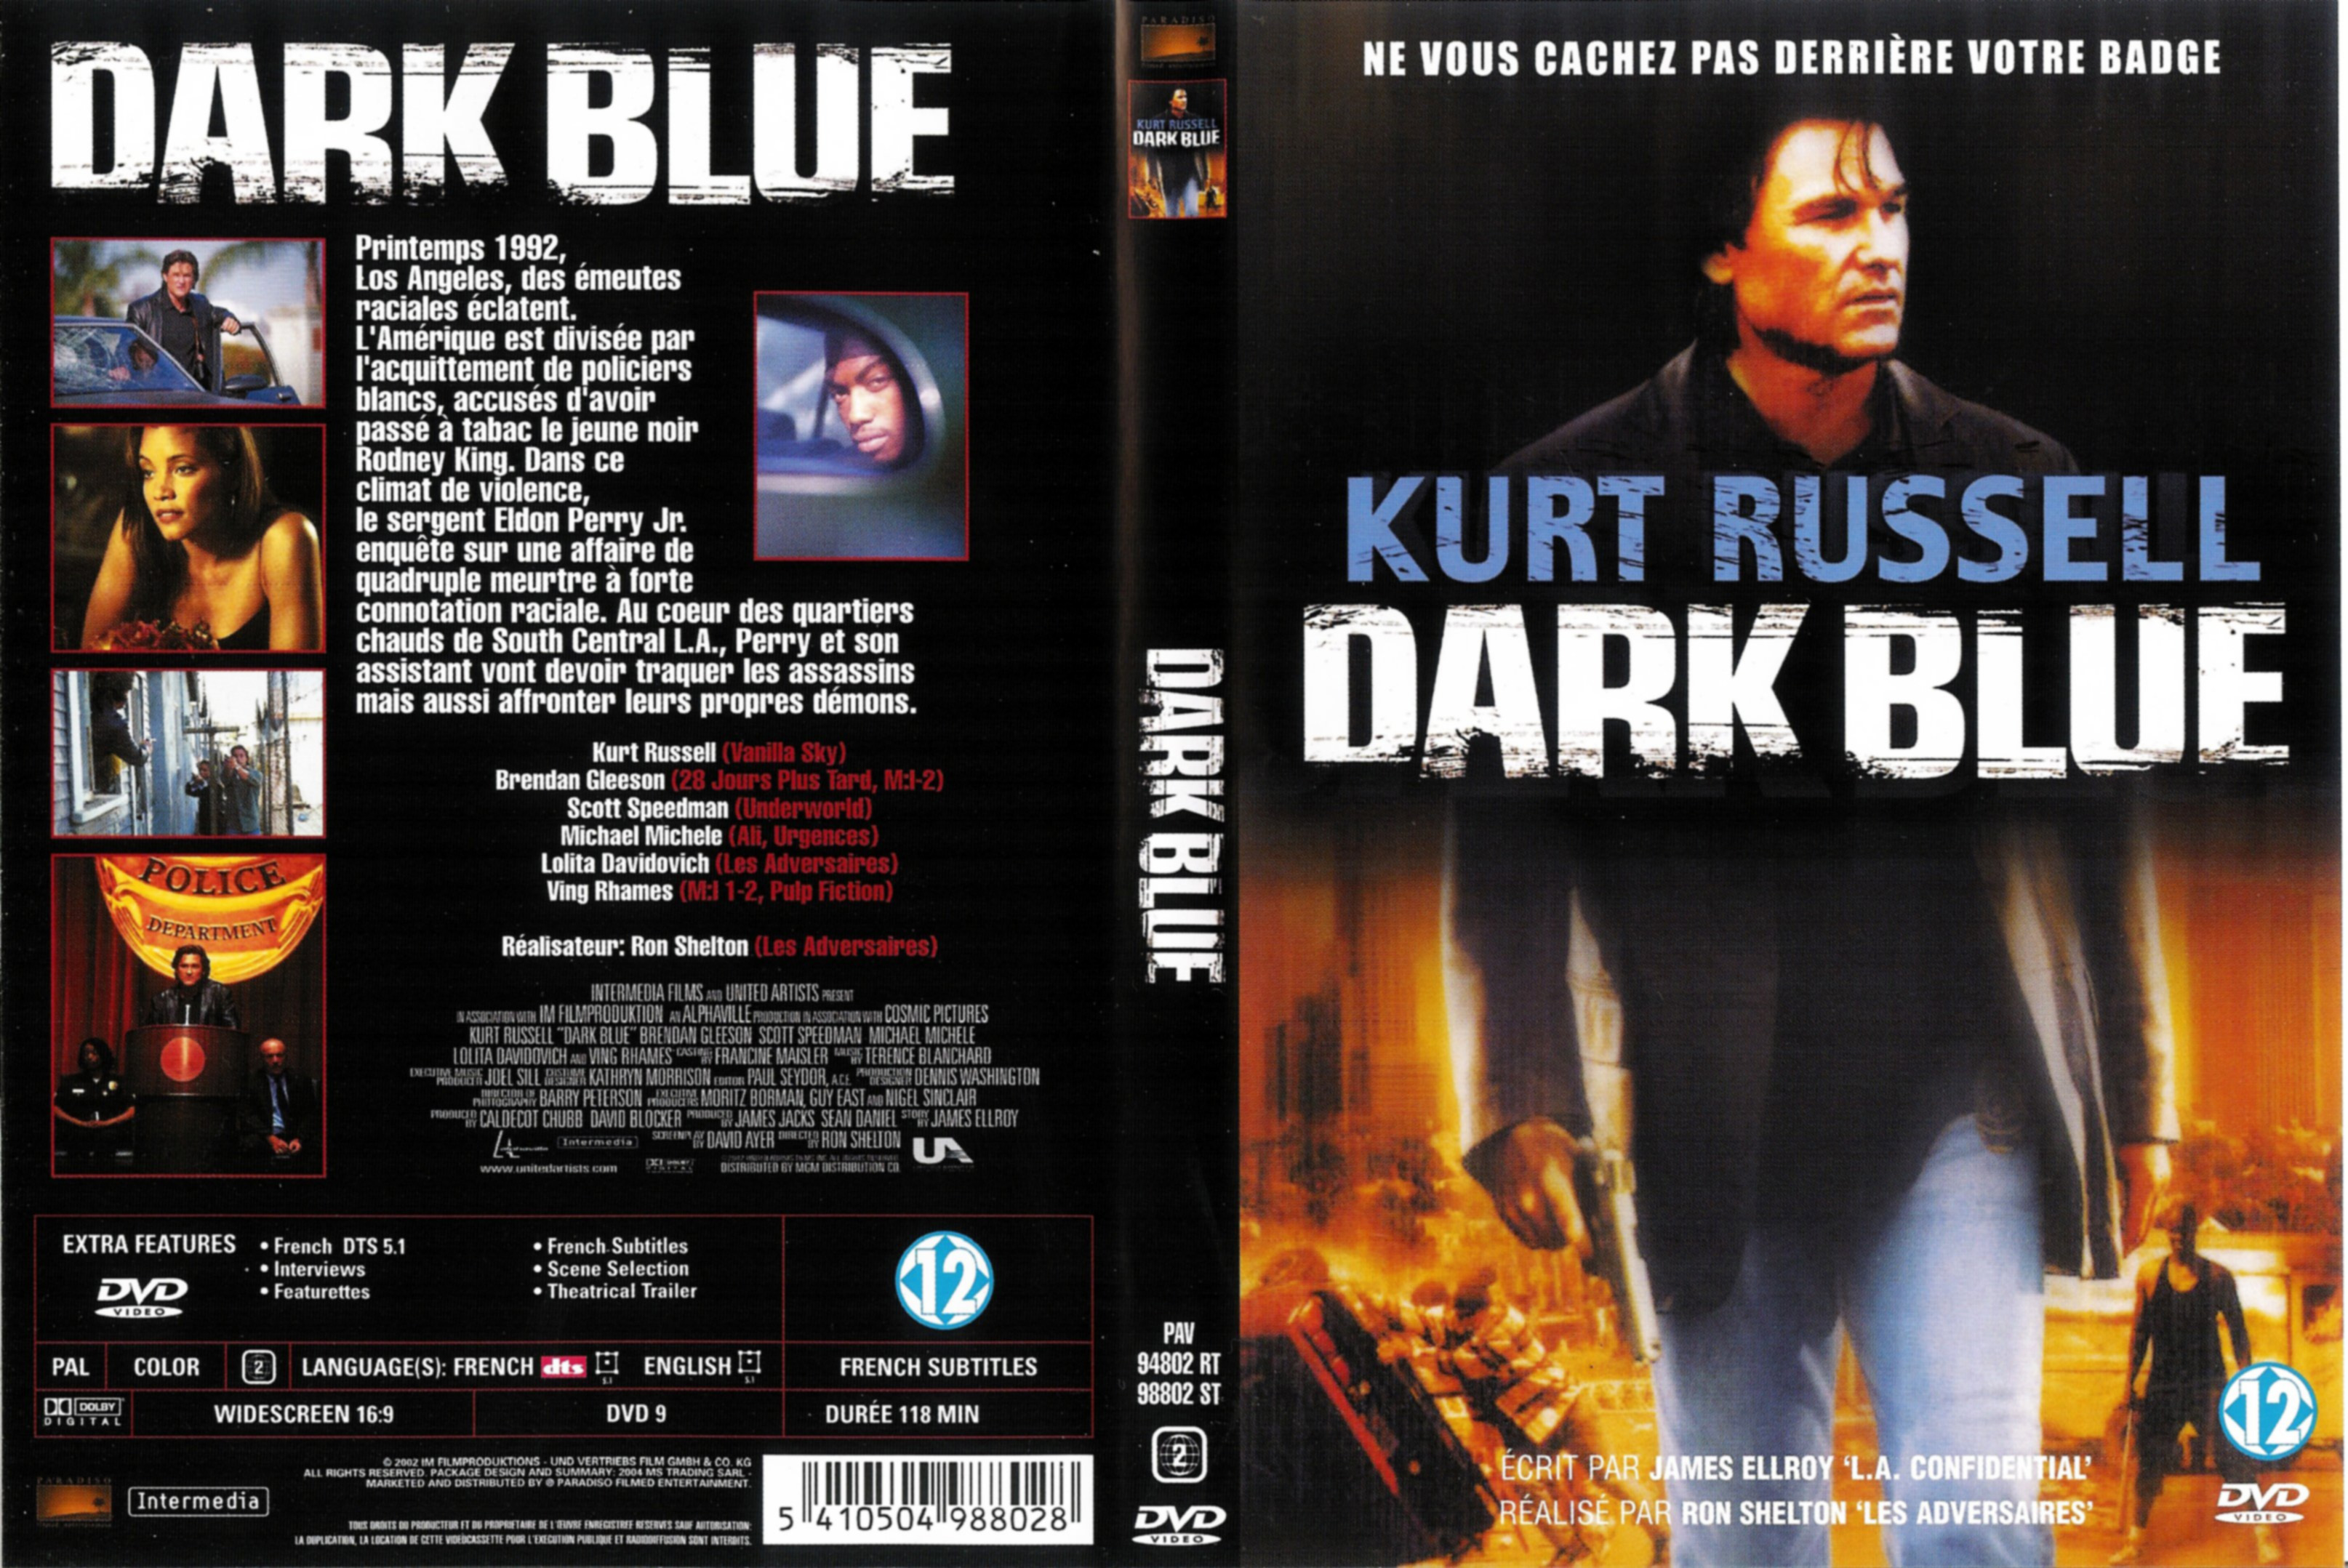 Jaquette DVD Dark blue v2